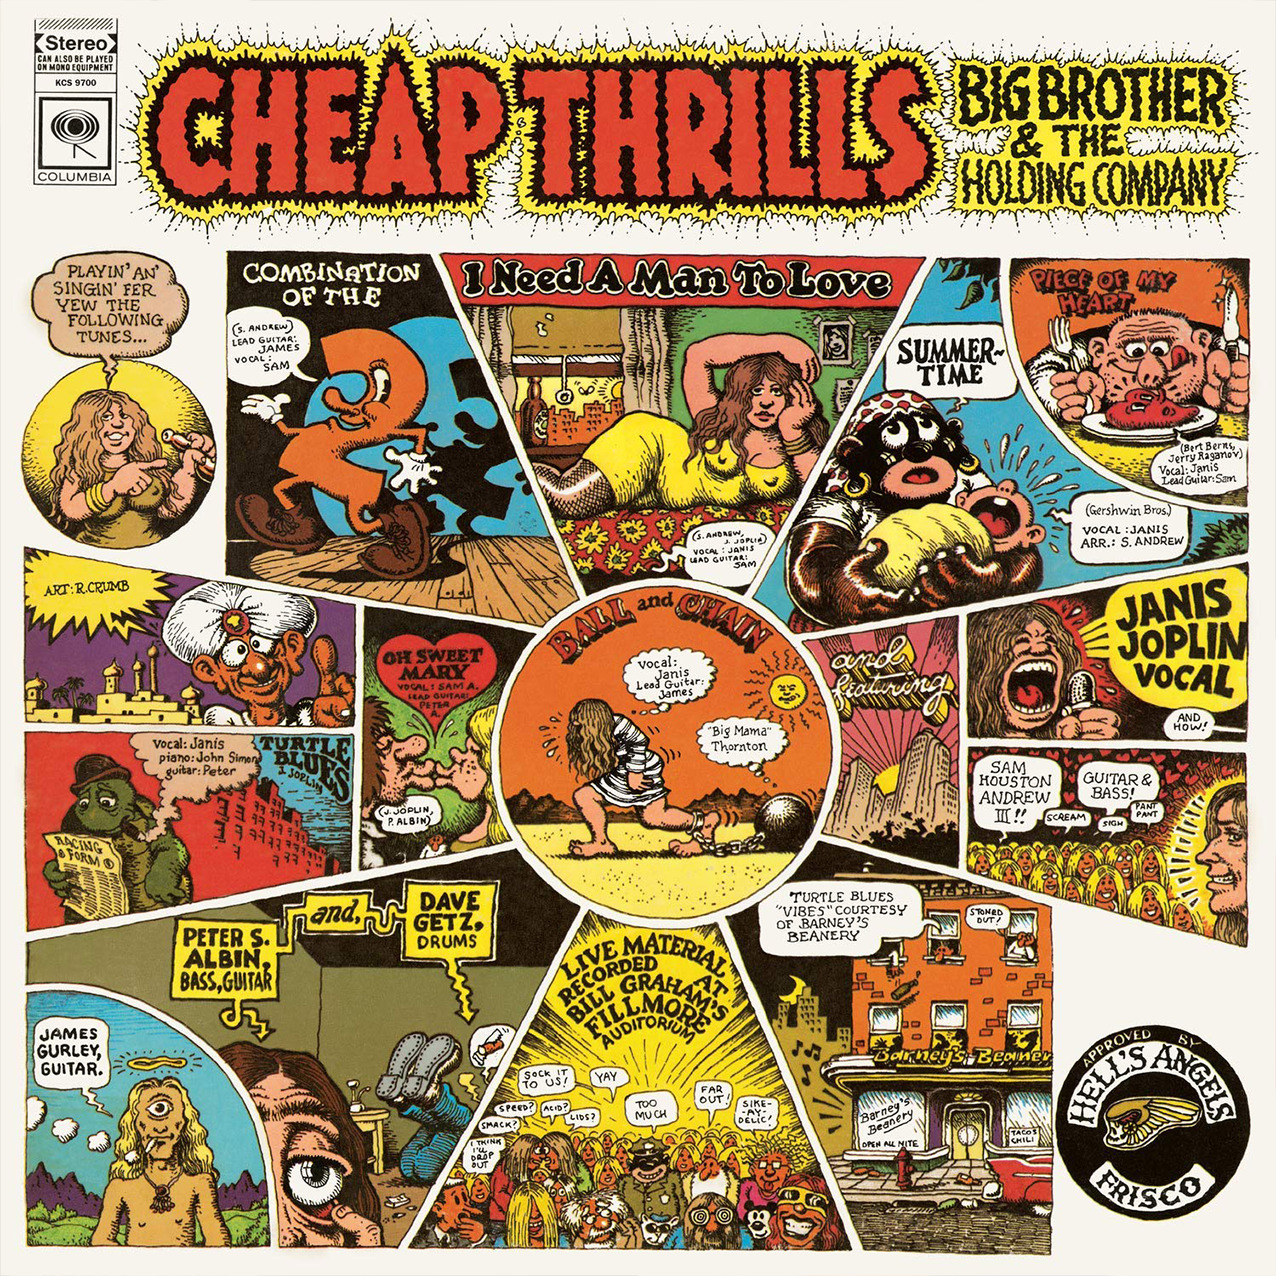 レコード買取専門店「TU-Field」では、ビッグ・ブラザー&ザ・ホールディング・カンパニー『チープスリル』のレコードを高価買取しております